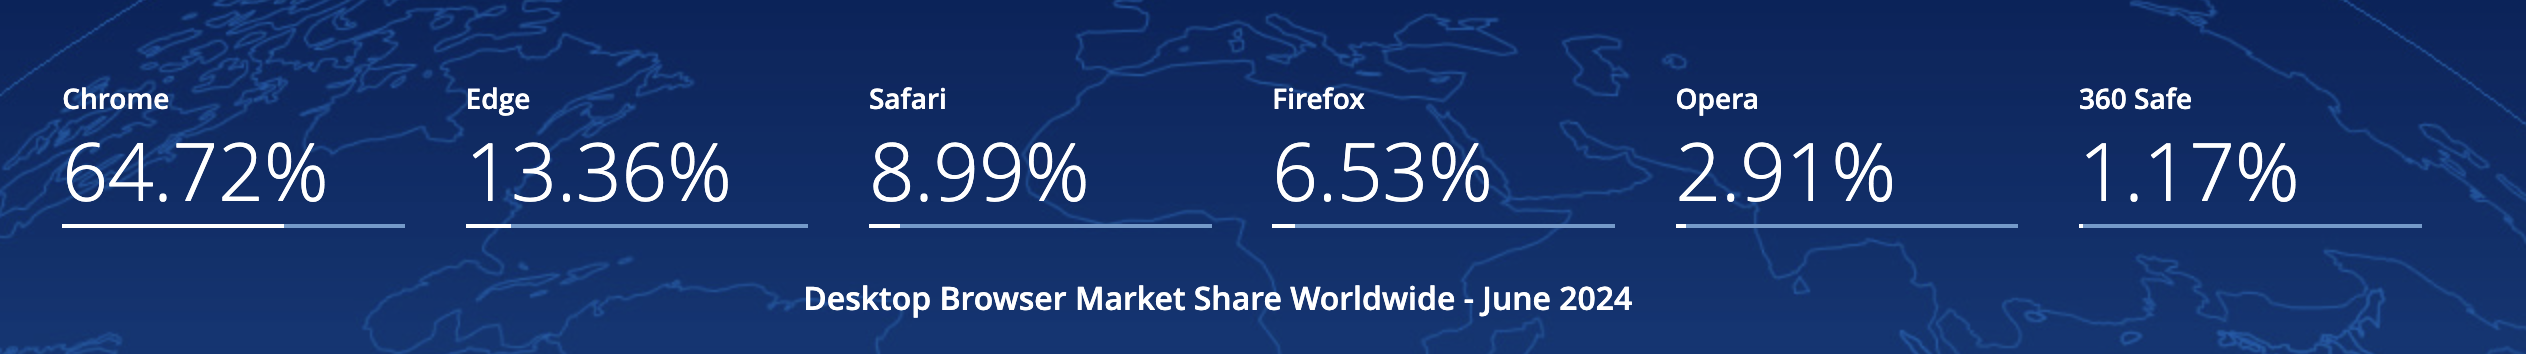 Desktop Browser Market Share in June 2024